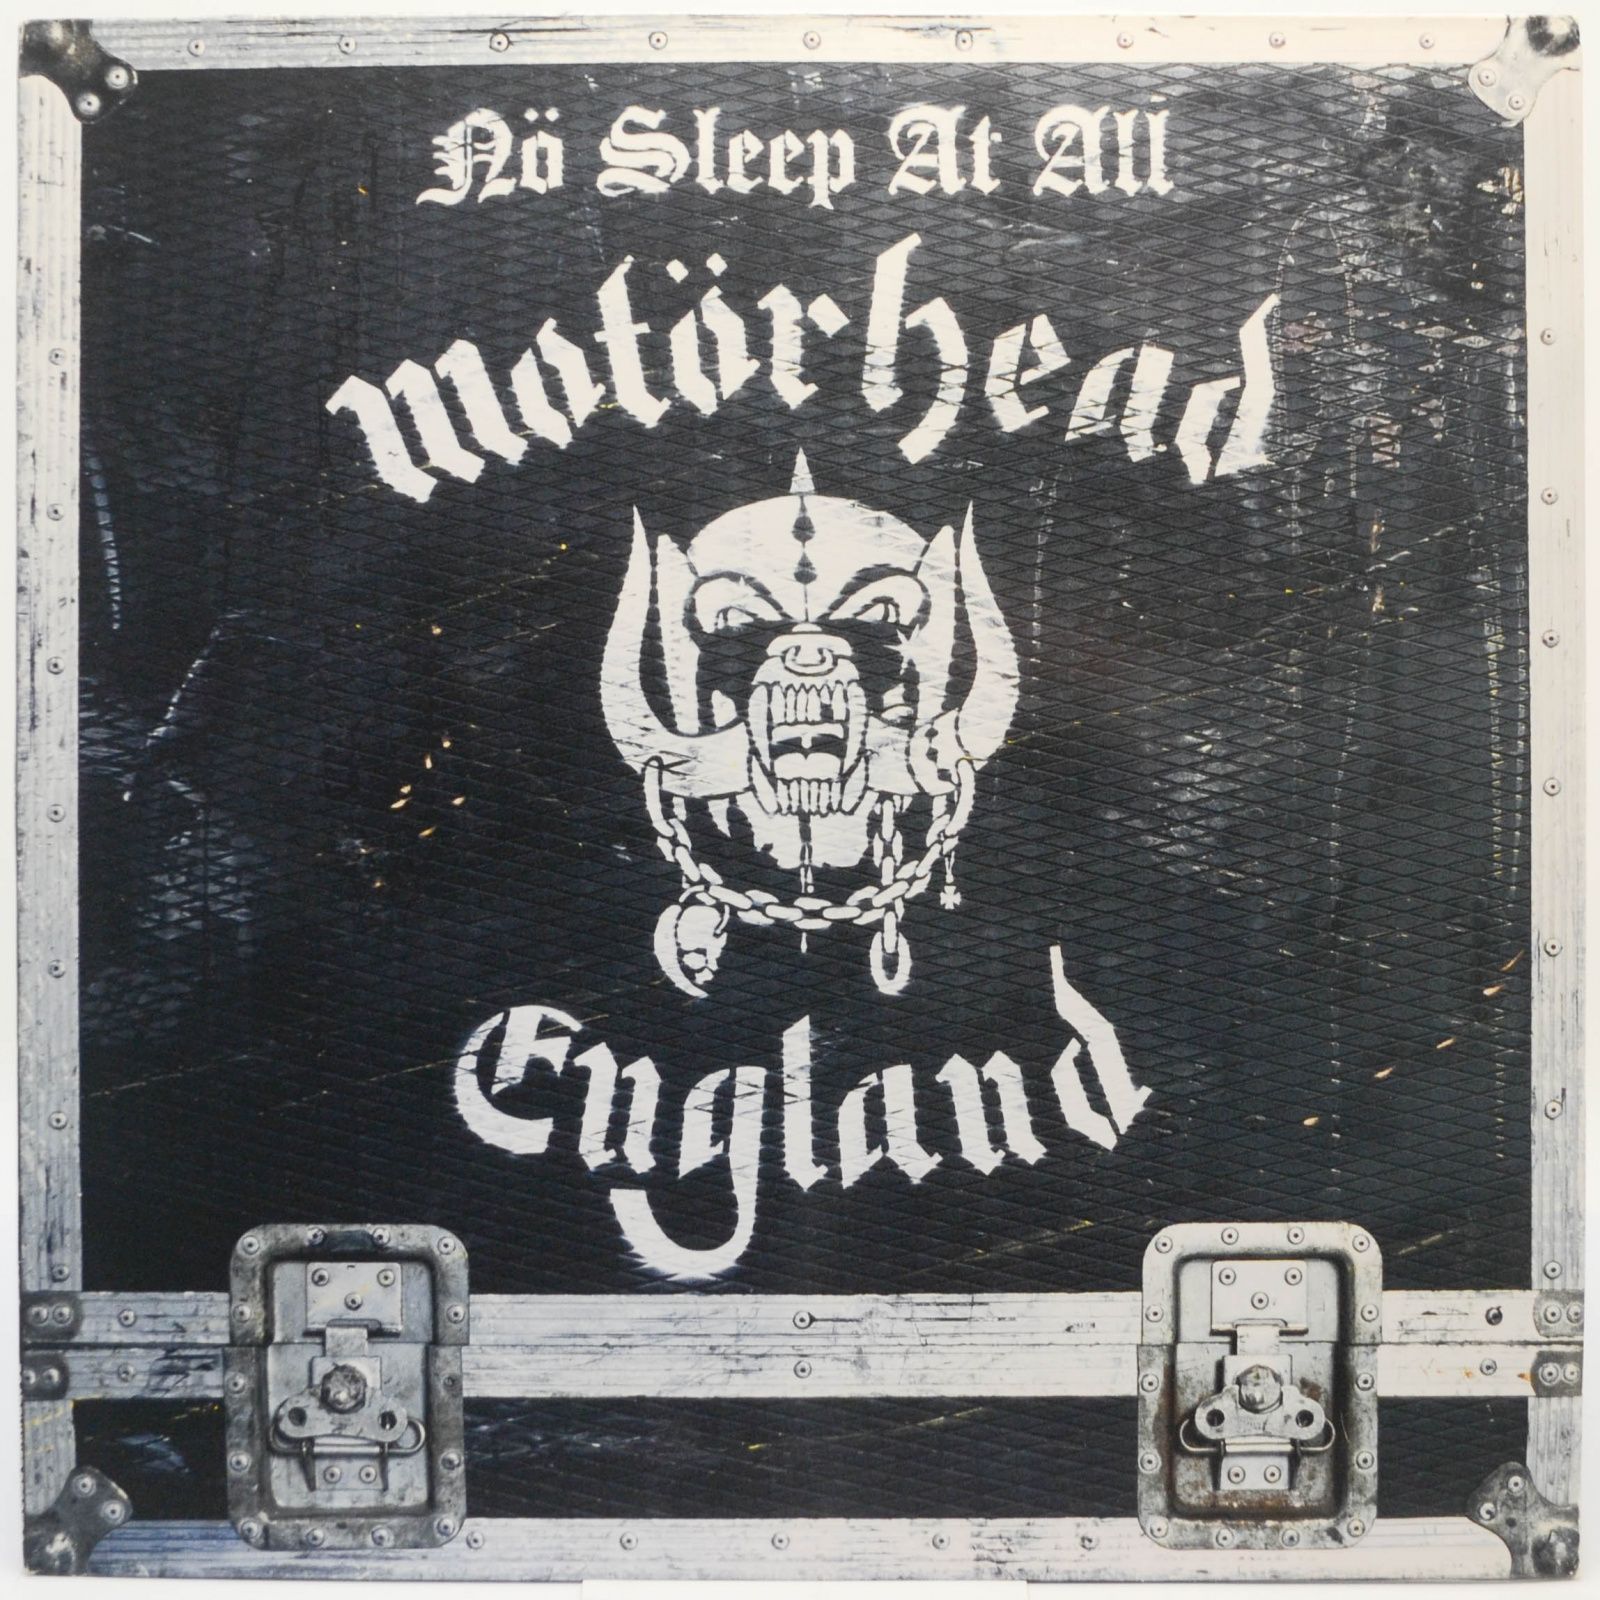 Motörhead — Nö Sleep At All, 1988